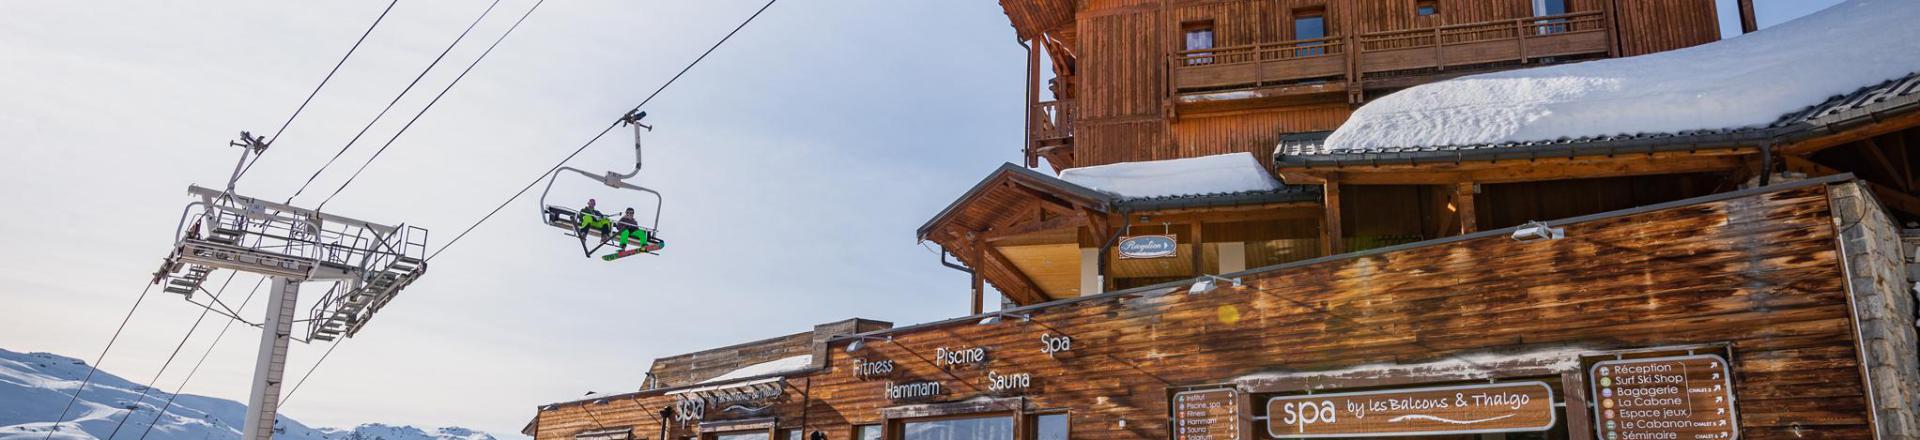 Location au ski Les Balcons de Val Thorens - Val Thorens - Extérieur hiver